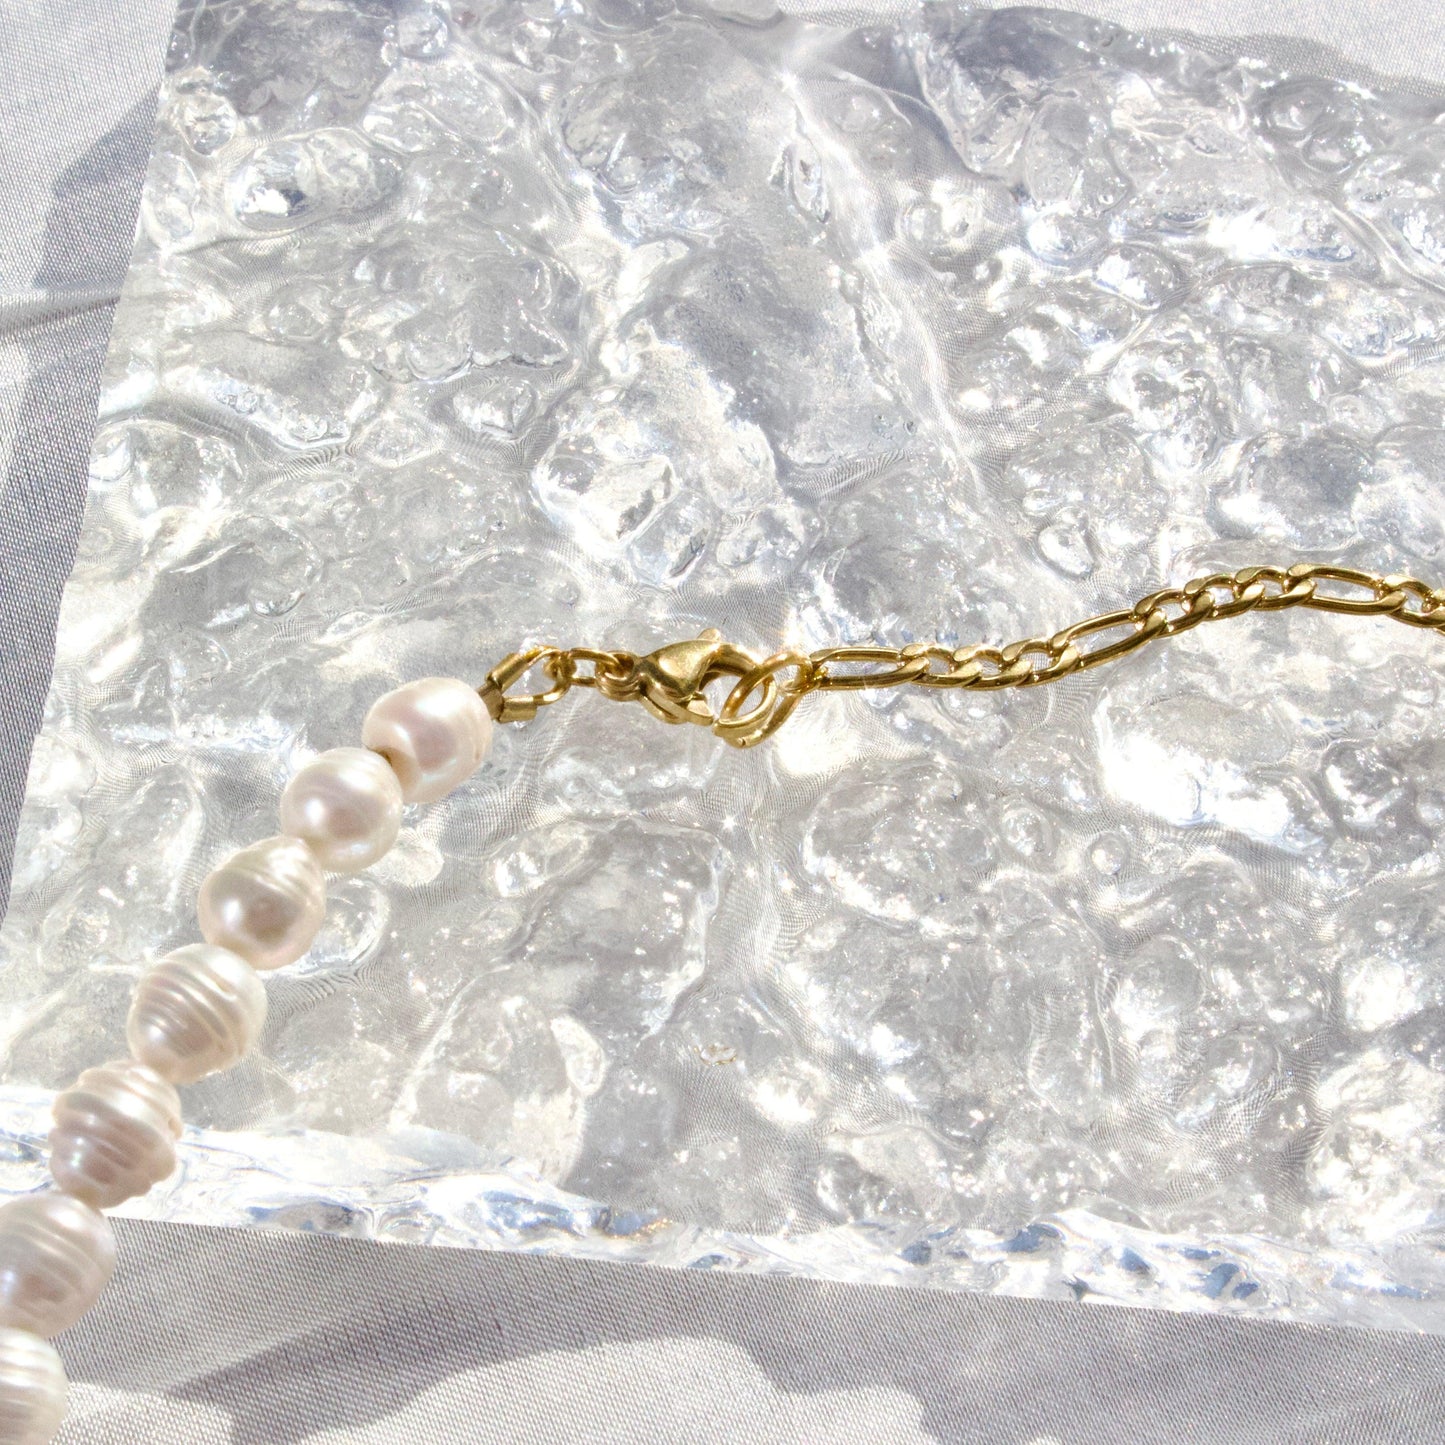 Ashley | Abstrakter Wassertropfen mit Perlenkette - JK Jewelry & Accessories